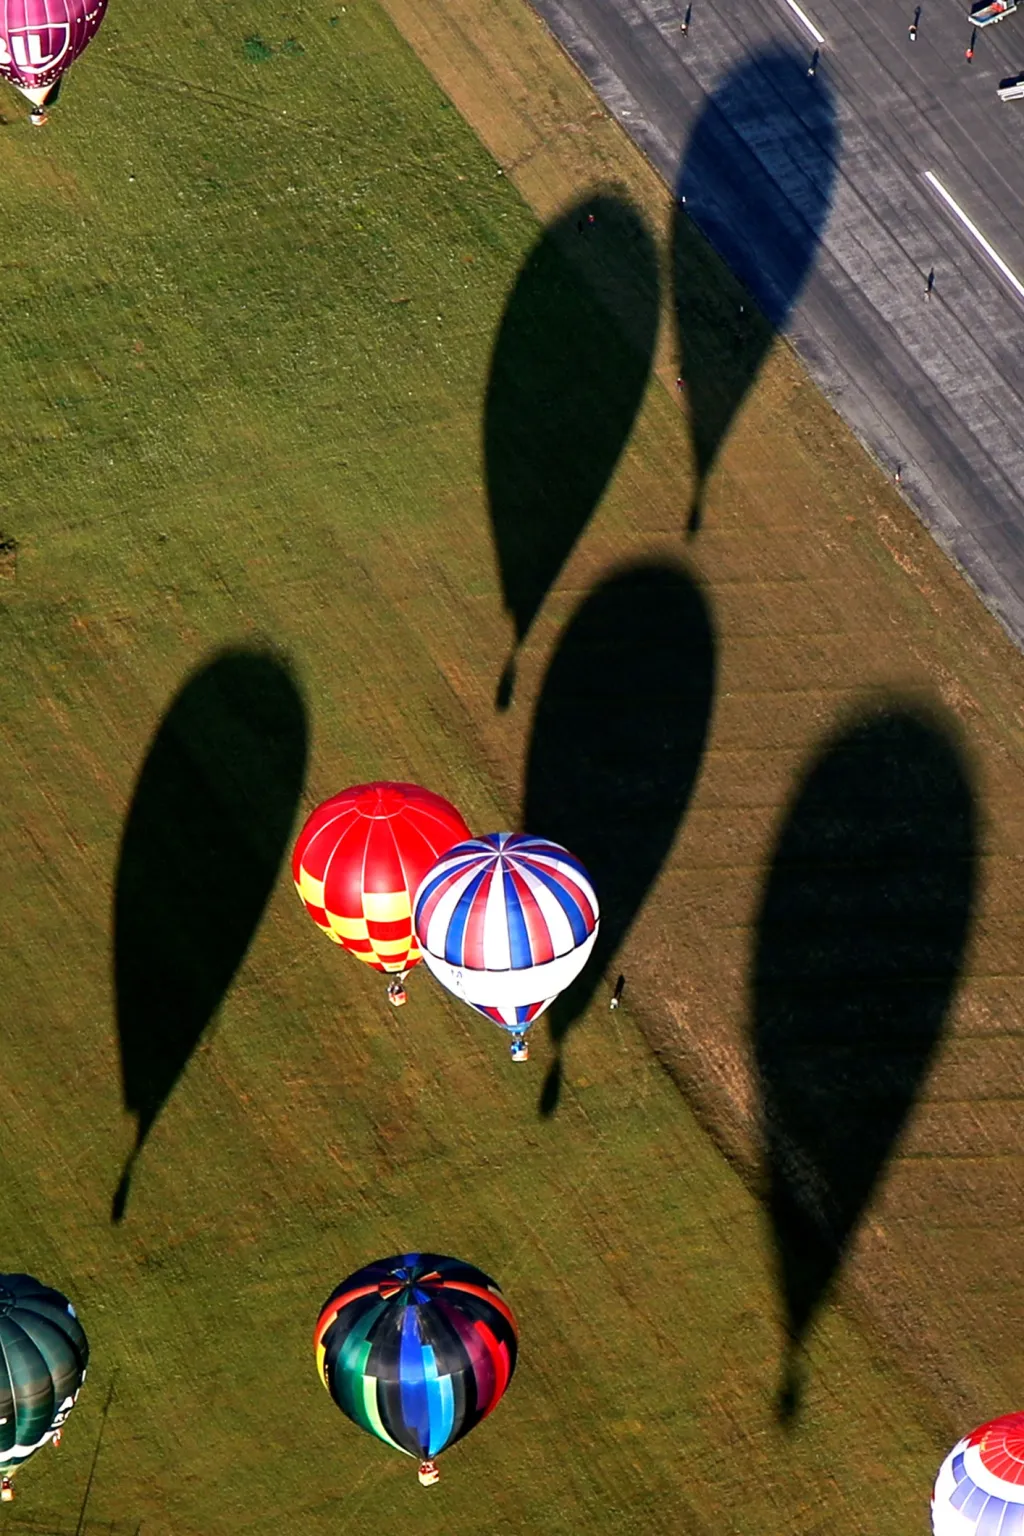 Existují dva druhy balonů. Aerostaty využívají ke vztlaku, čili síle, která vynese posádku do výše, médium lehčí než vzduch. U plynových balonů jsou tímto médiem vzácné plyny, obvykle helium nebo vodík. Druhou možností je montgolfiéra, čili česky horkovzdušný balon. Je to létající objekt, jehož vztlak tvoří ohřátý vzduch. Ten je lehčí než vzduch v okolním prostředí balonu